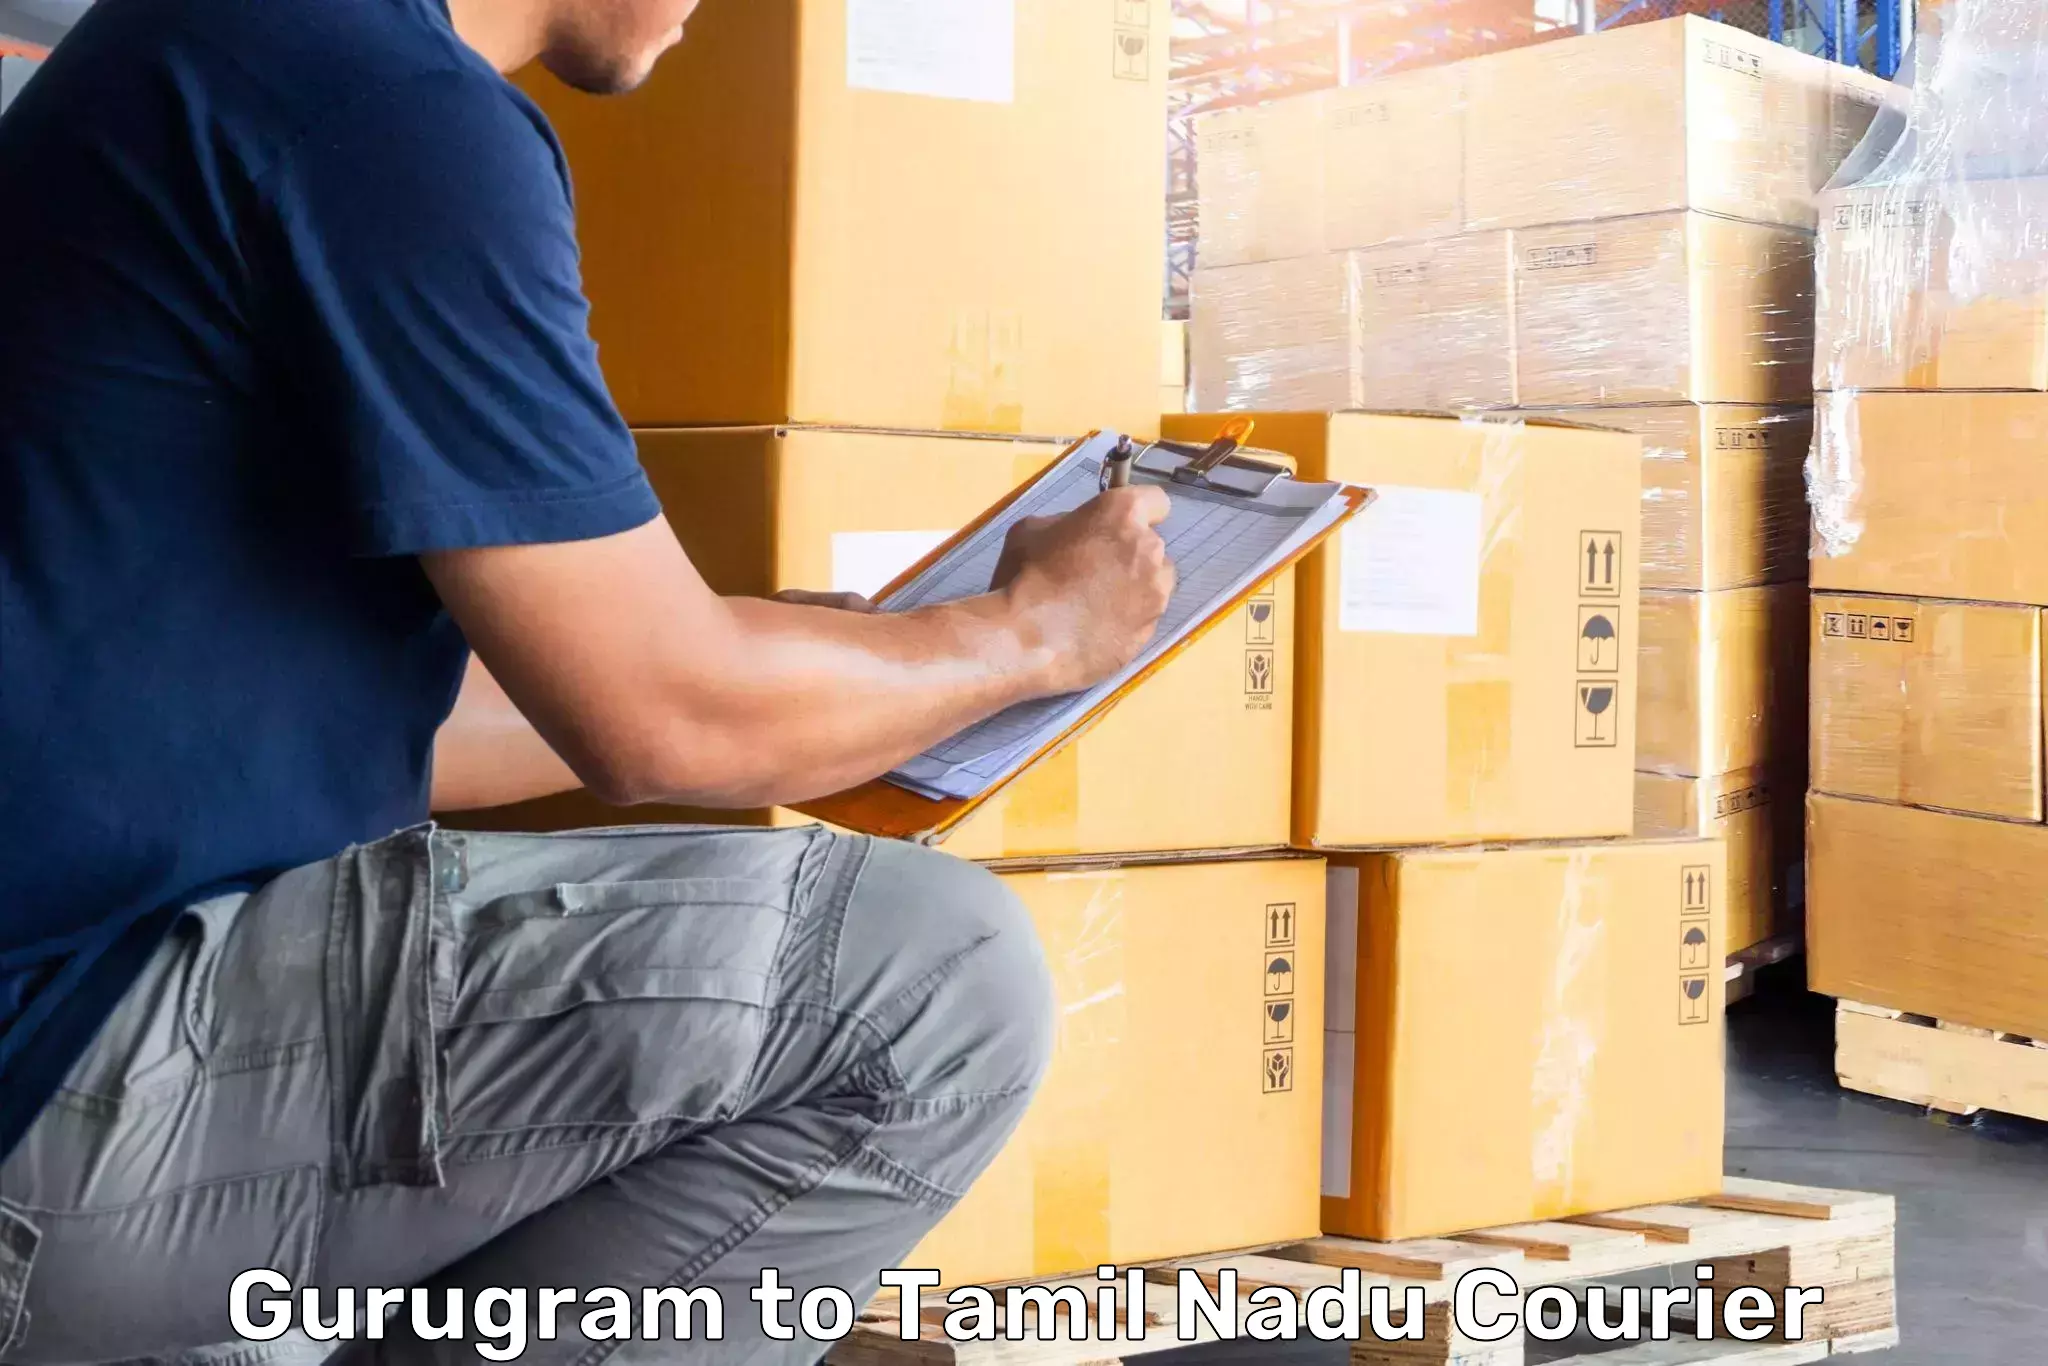 Luggage delivery system Gurugram to Neyveli